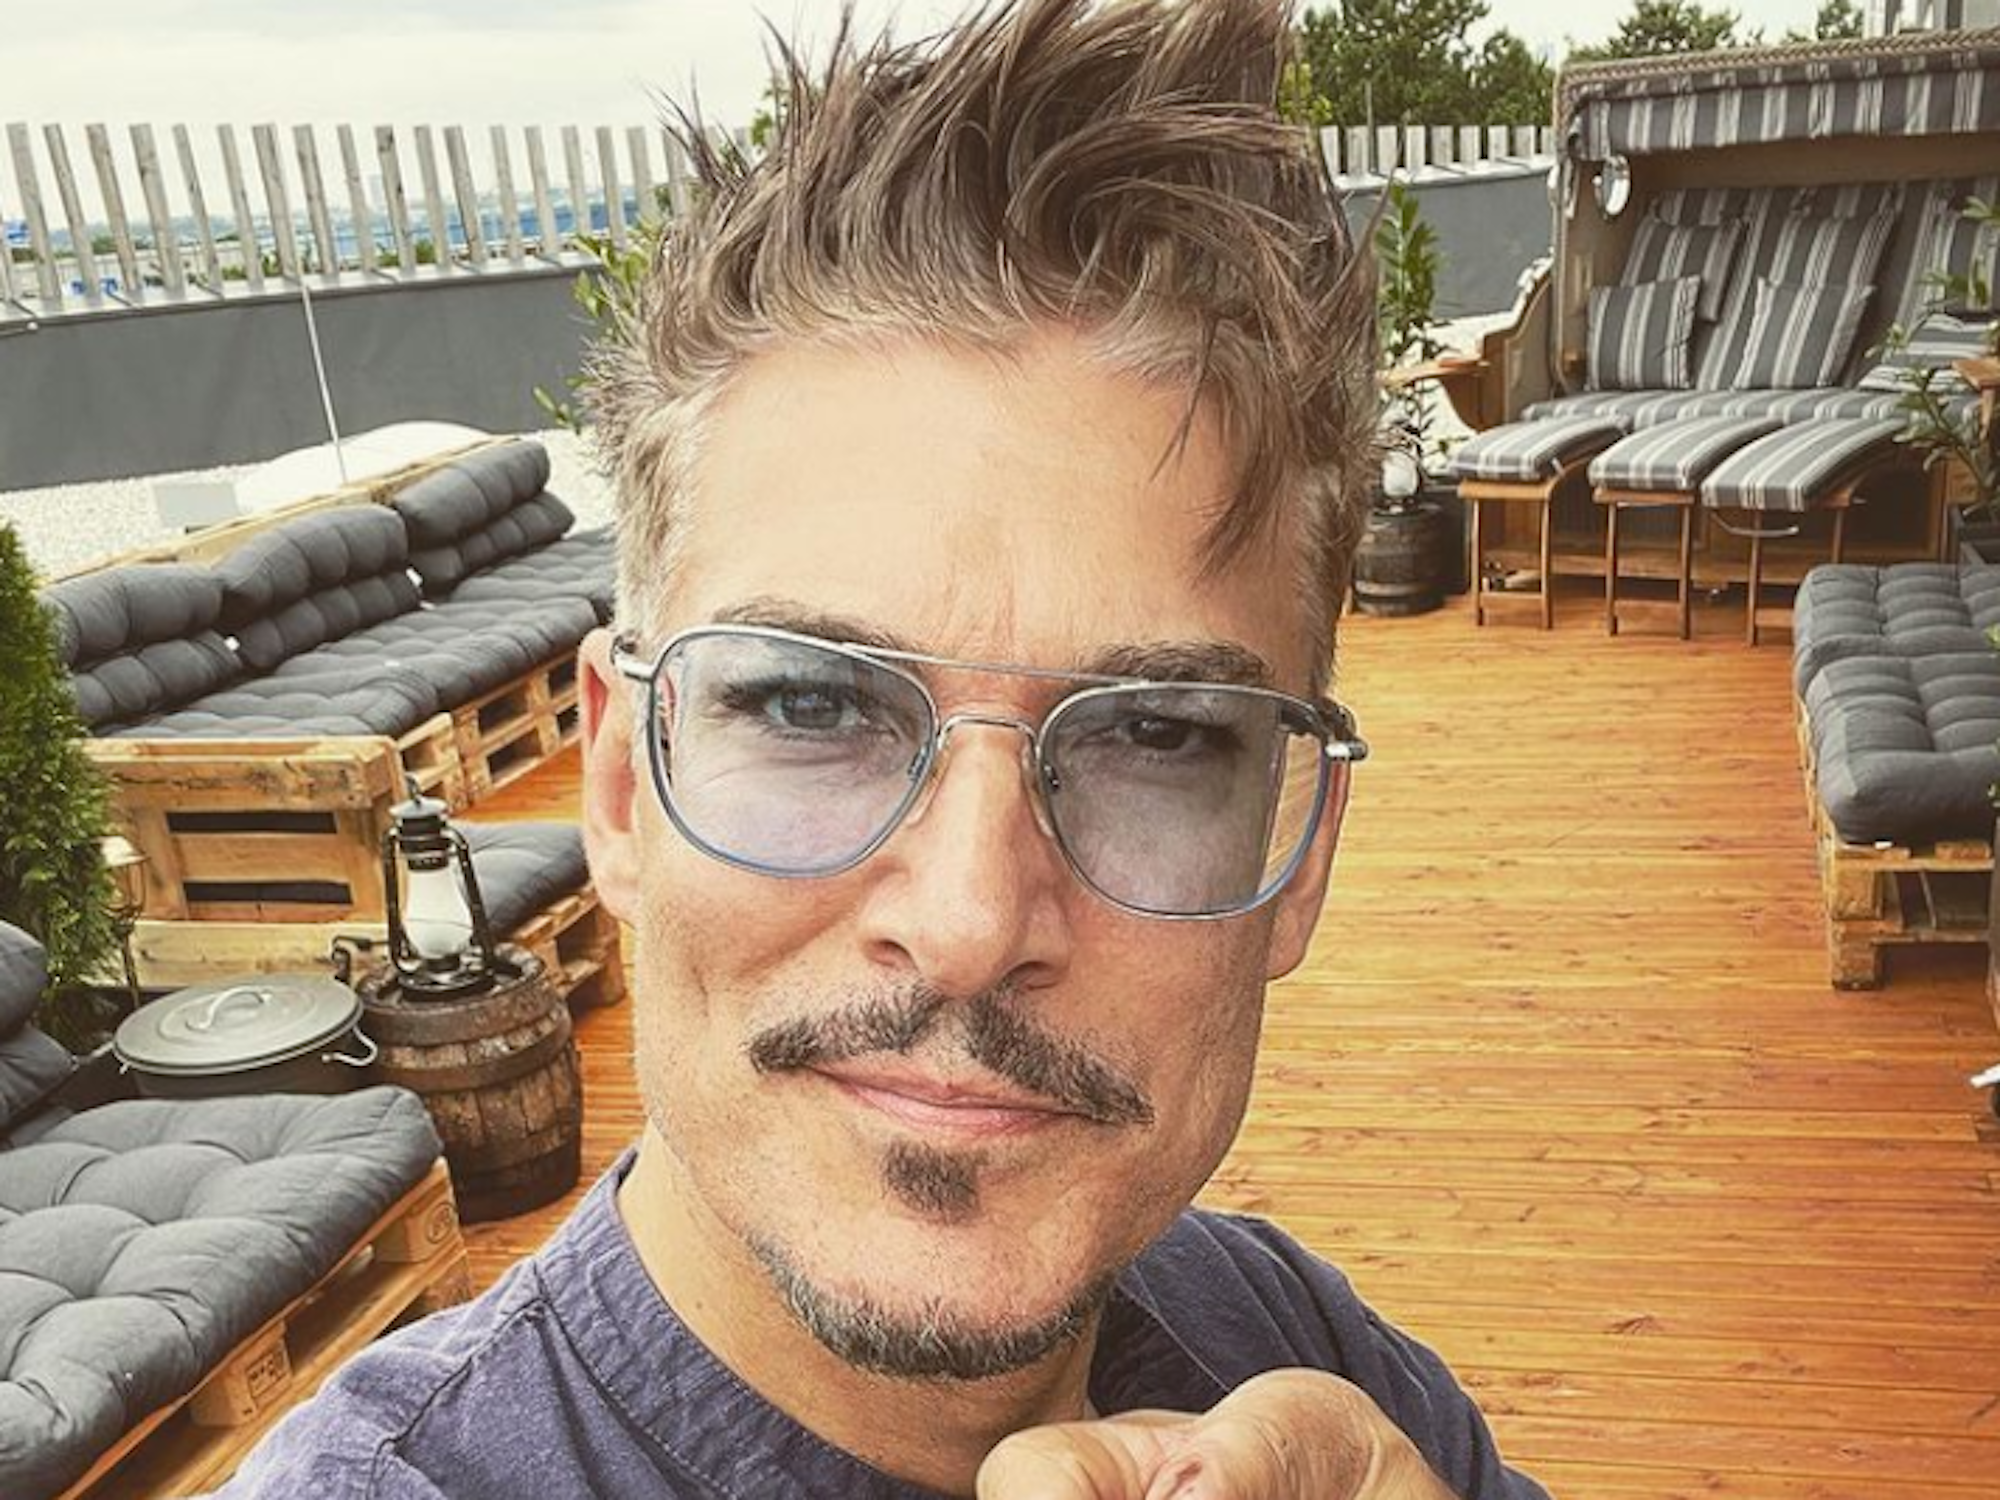 Auf Instagram zeigt er stolz seine erschlankte Figur: Chris Töpperwien, hier auf einem Selfie im Juli, hat stark abgenommen.